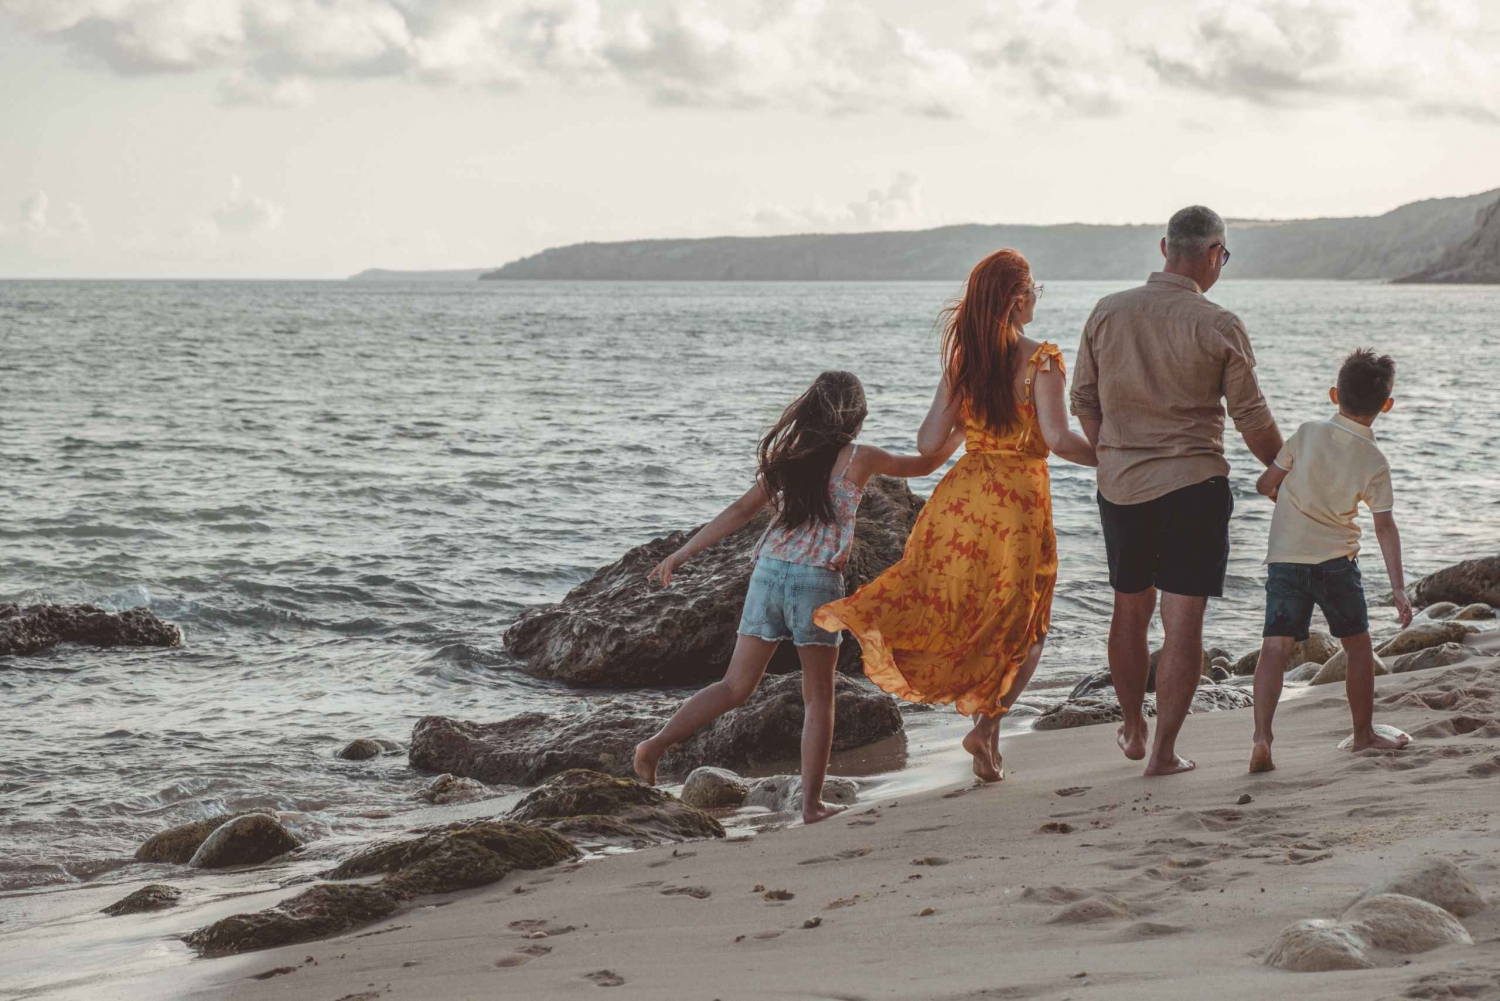 Algarve: Family photoshoot experience